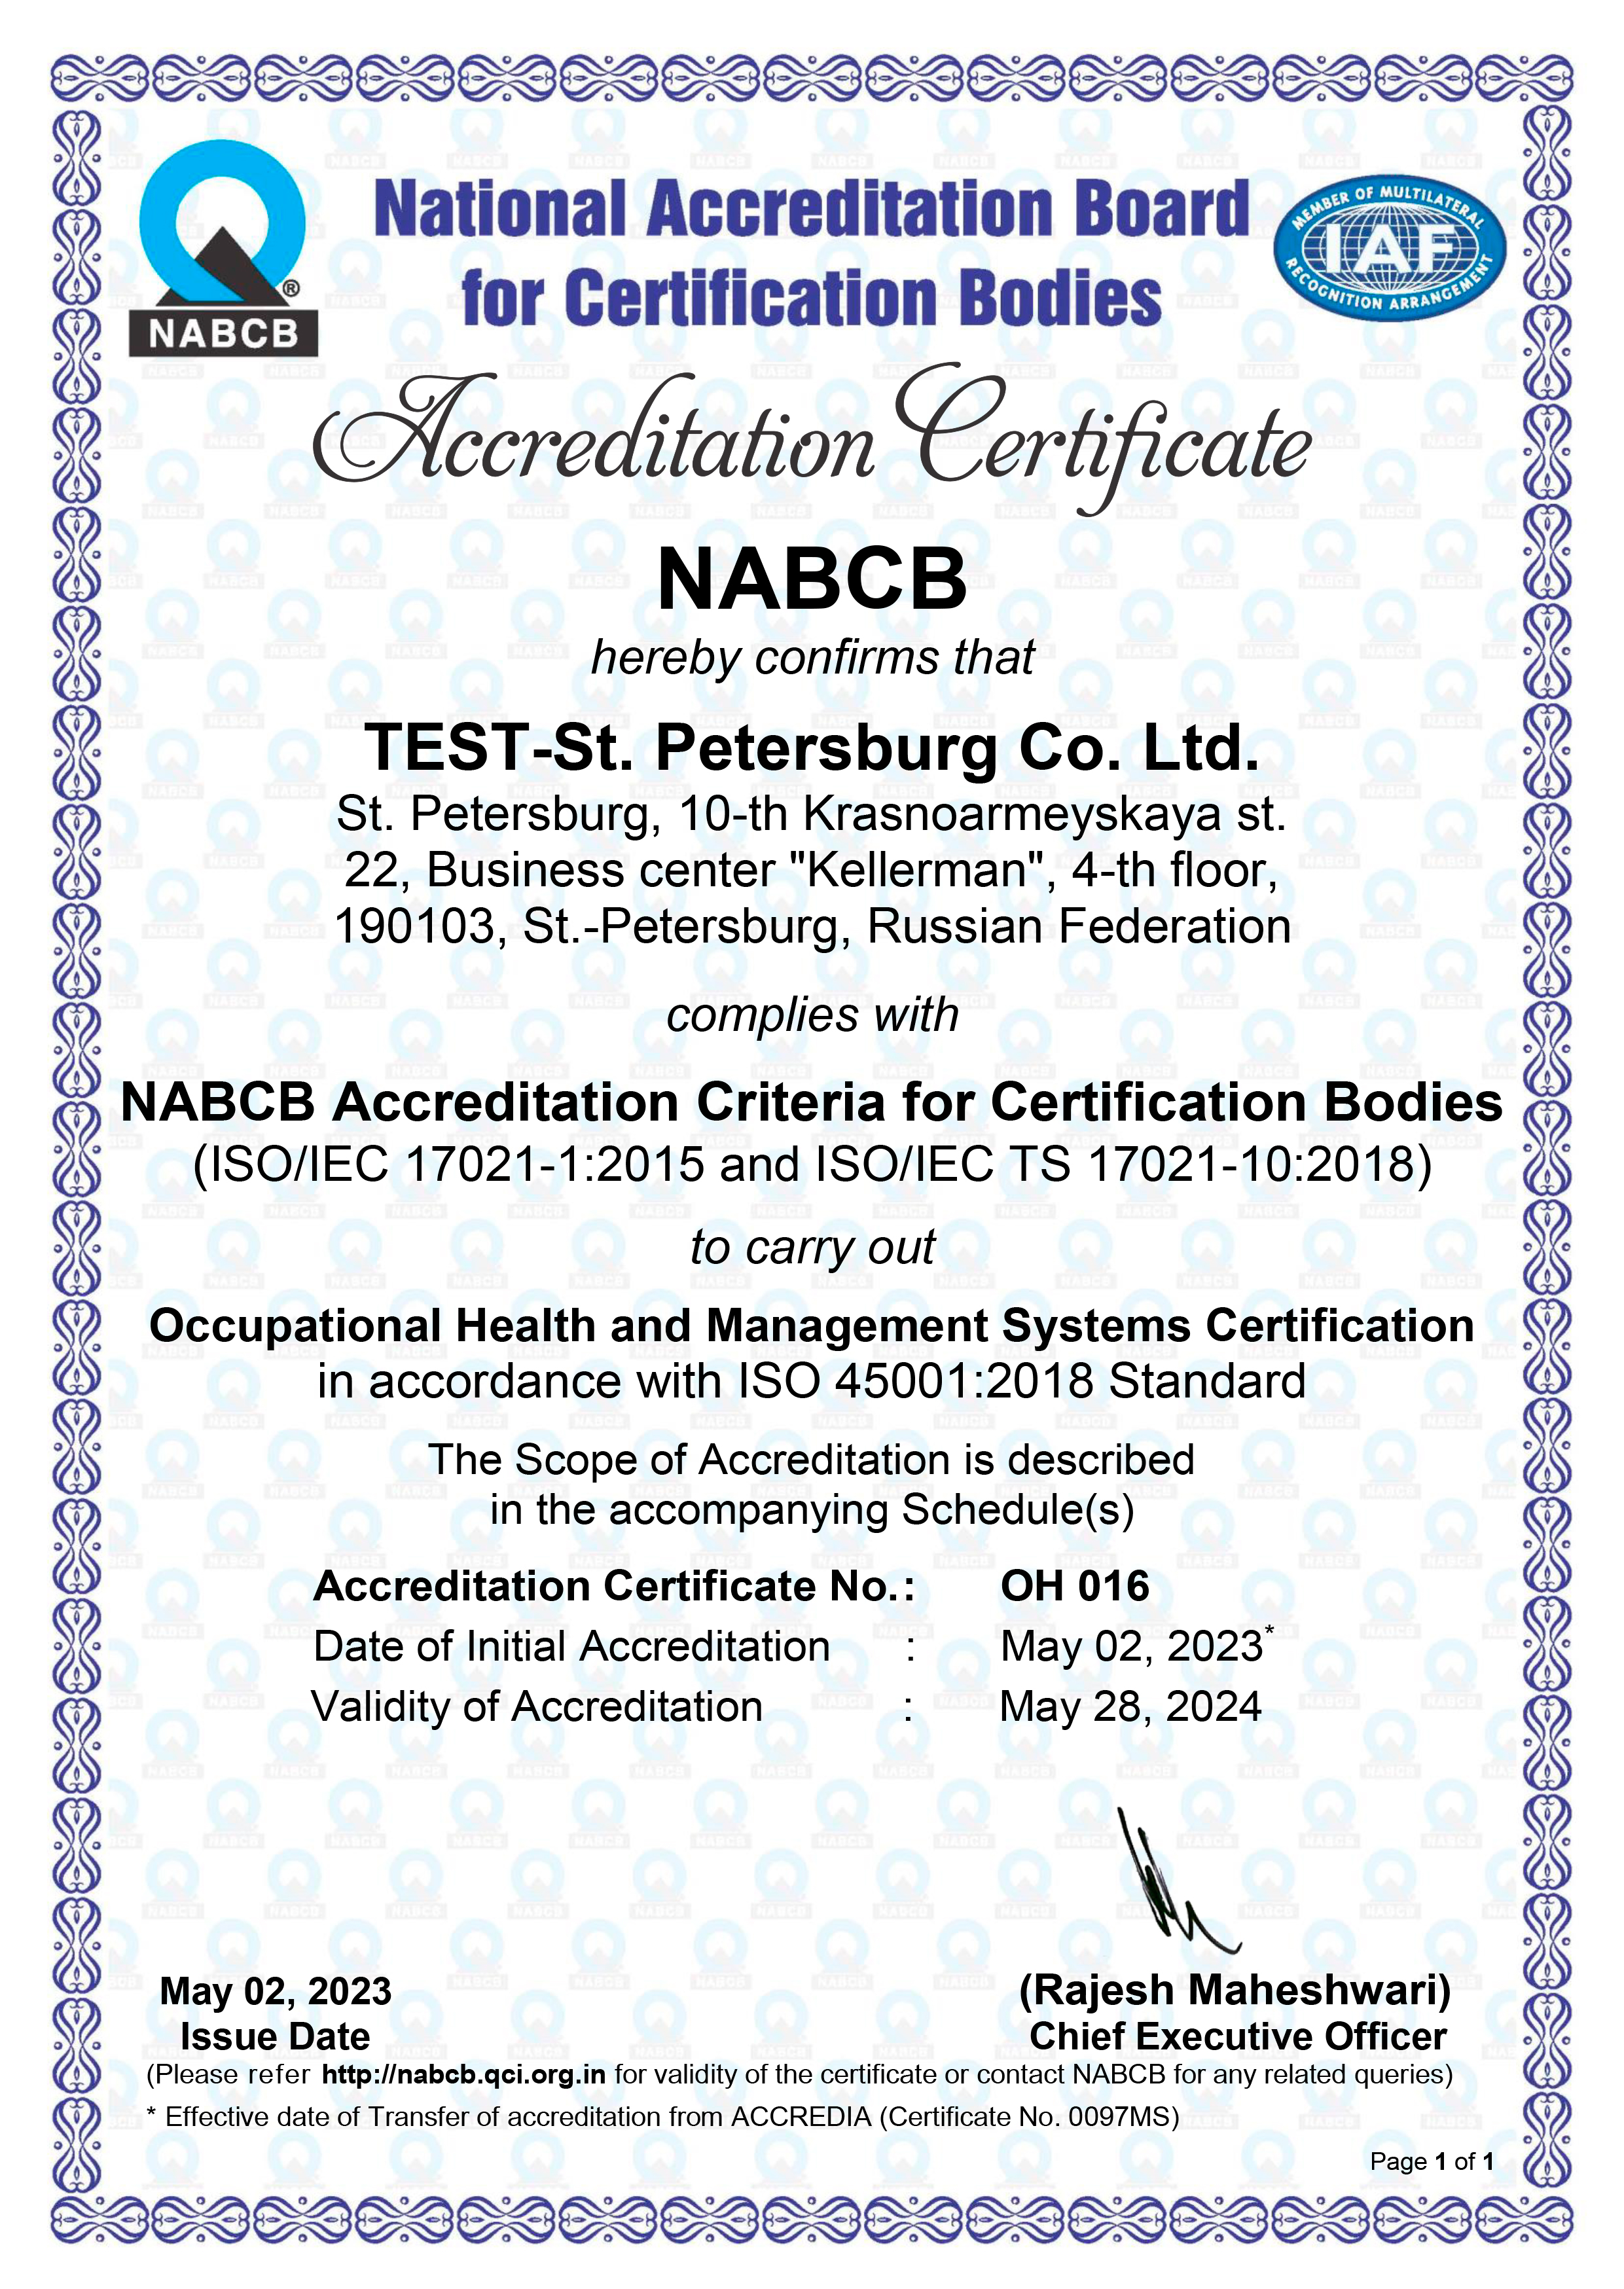 Критерии аккредитации NABCB для органов по сертификации
(ISO/IEC 17021-1:2015 и ISO/IEC TS 17021-10:2018)